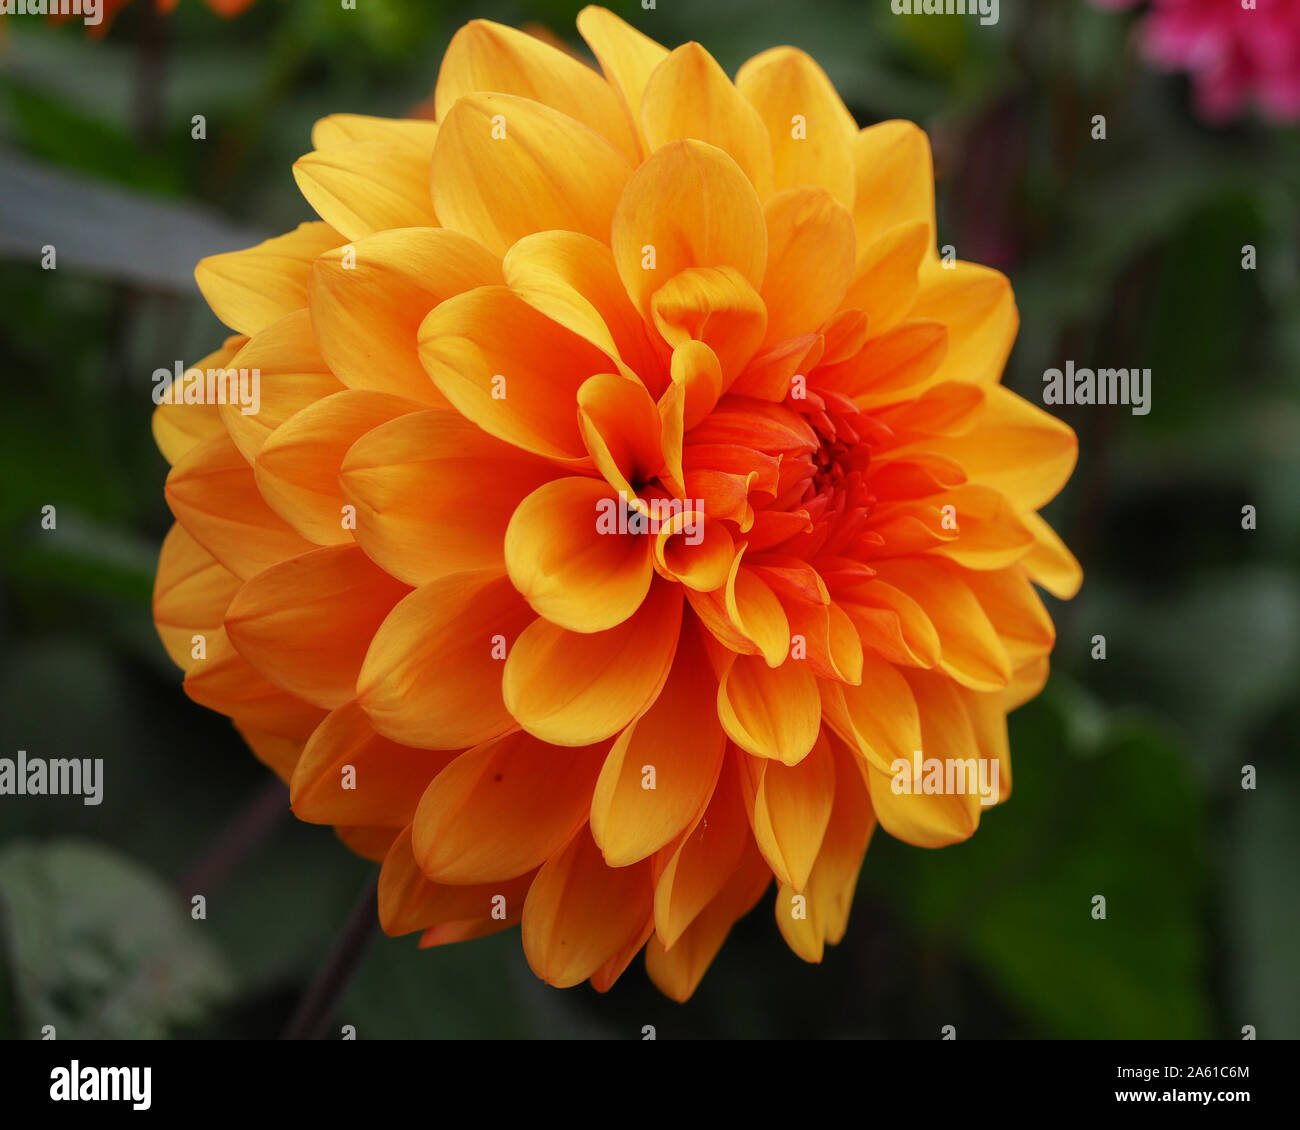 Beautiful Orange Dahlia David Howard Flower In A Garden Stock Photo